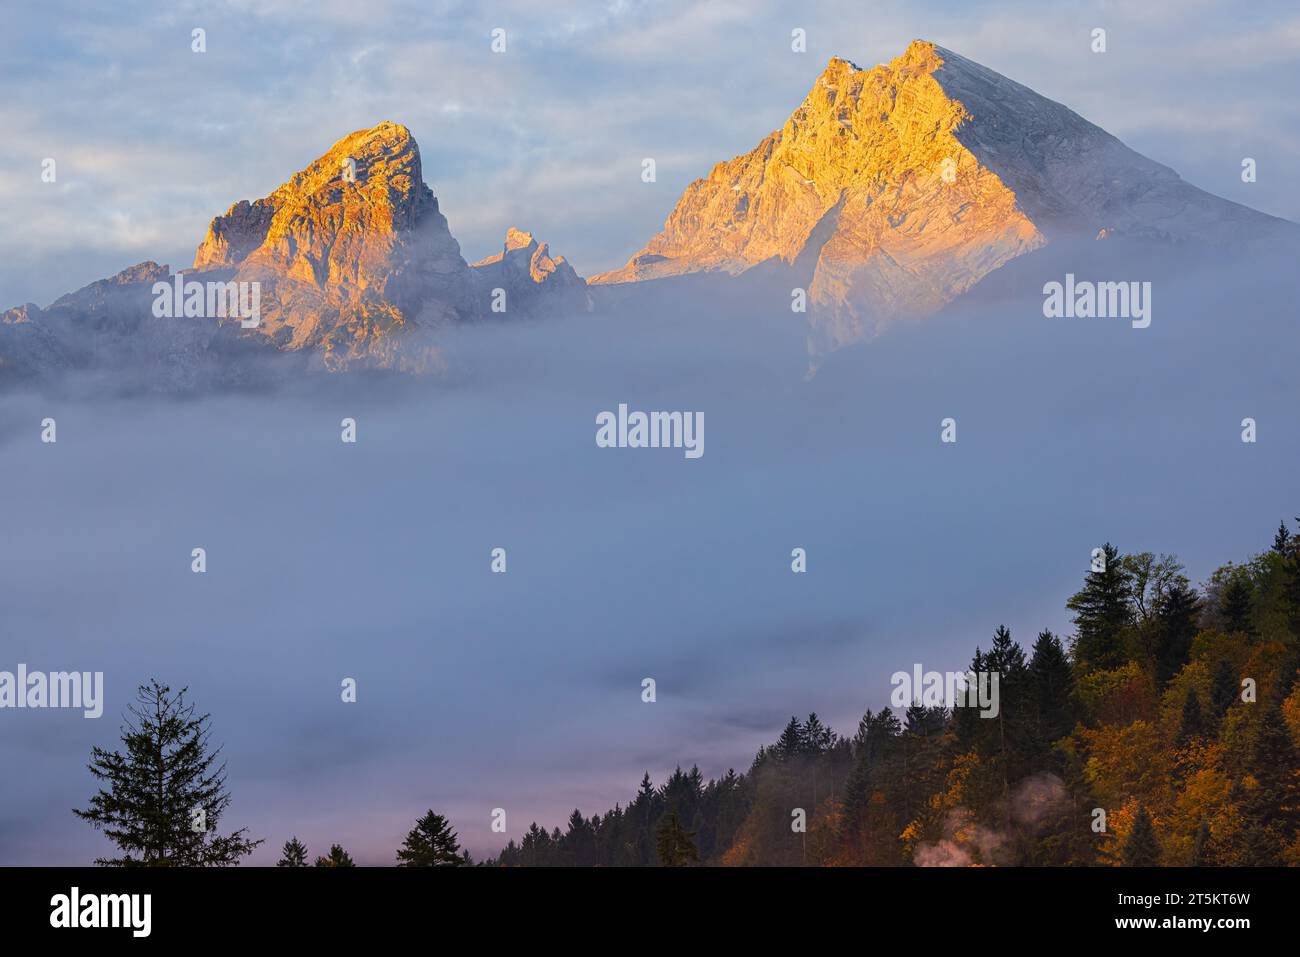 La montagne Watzmann dépasse au-dessus des nuages lors d'un lever de soleil d'automne près de Berchtesgaden dans les terres de Berchtesgadener en Bavière, dans le sud-est de l'Allemagne. Banque D'Images